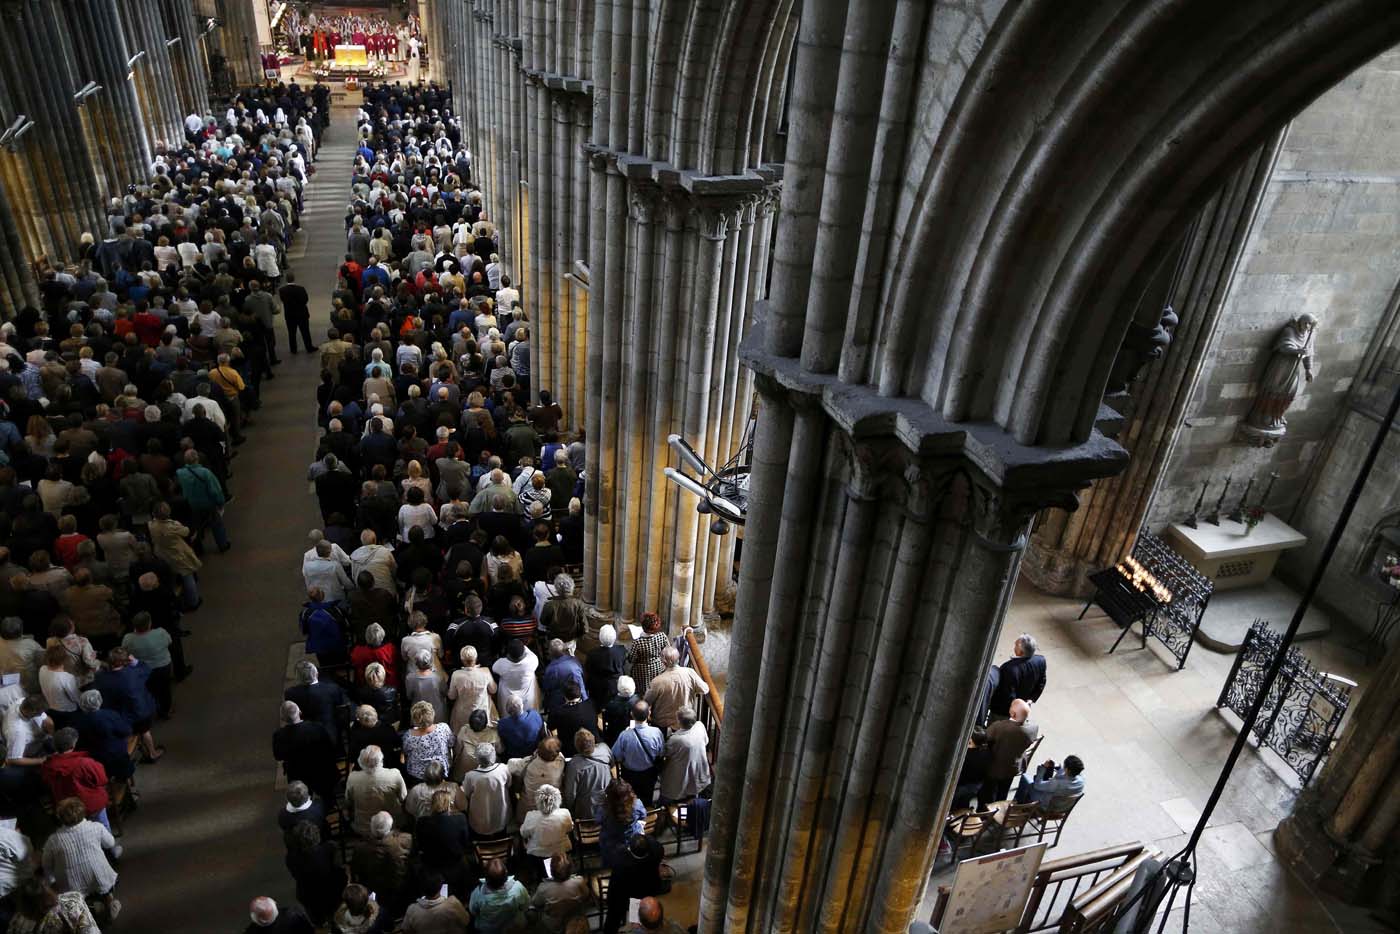 Dolor y horror en el funeral del sacerdote degollado en Francia (fotos)